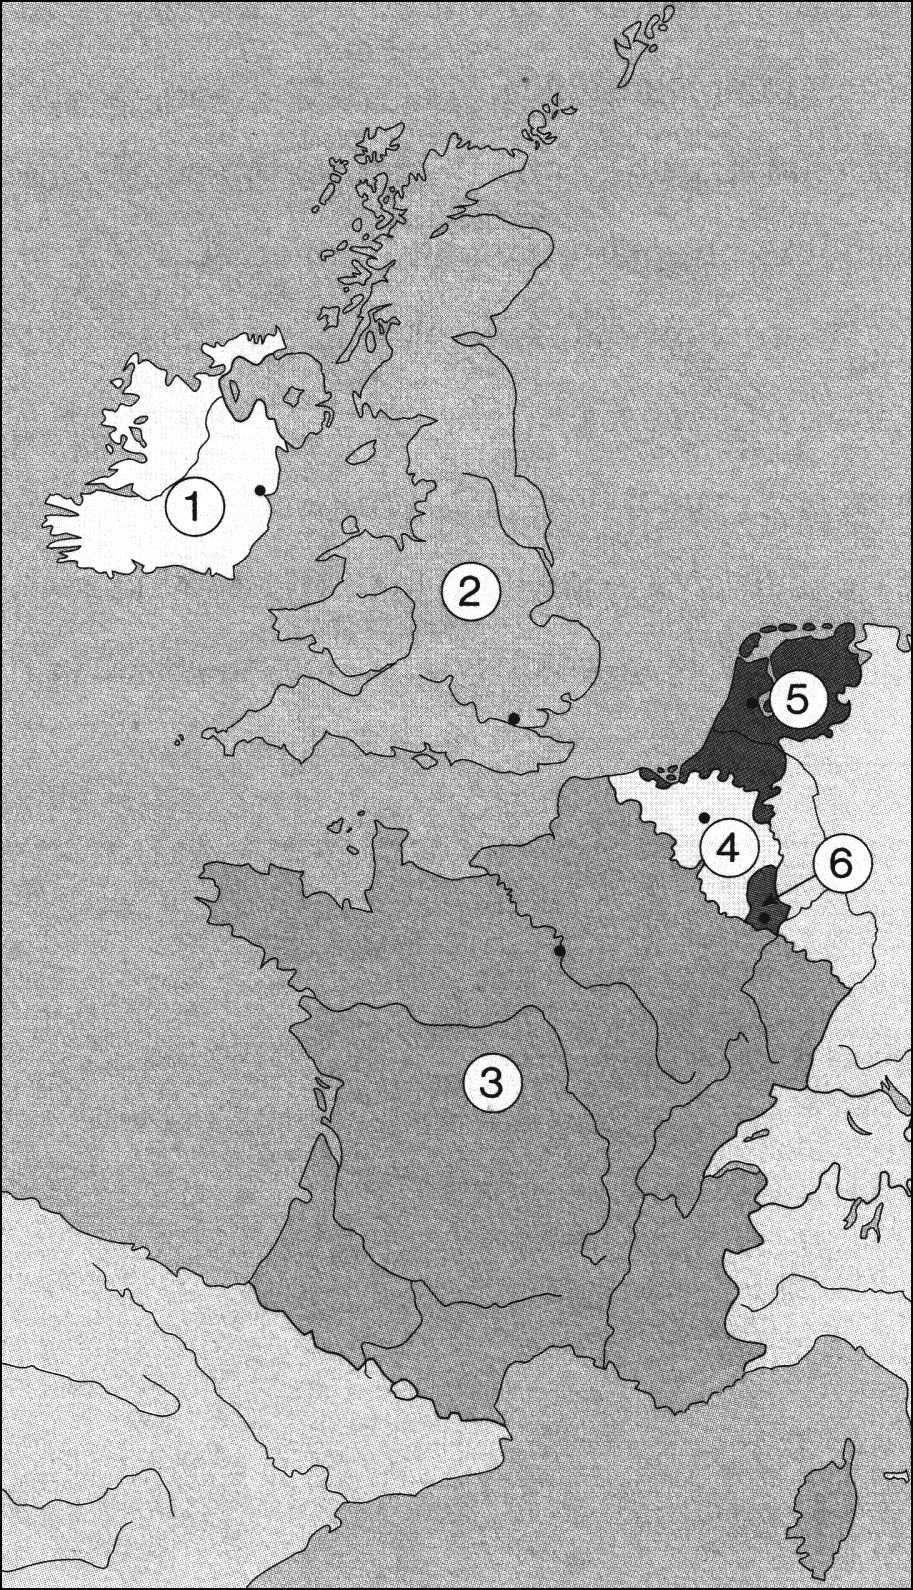 21 C2 EVROPA / EURÓPA 29. Na karti 6 so s številkami označene zahodnoevropske države. Poimenujte njihova glavna mesta (na karti 6 so označena s črnimi točkami). A 6. sz.